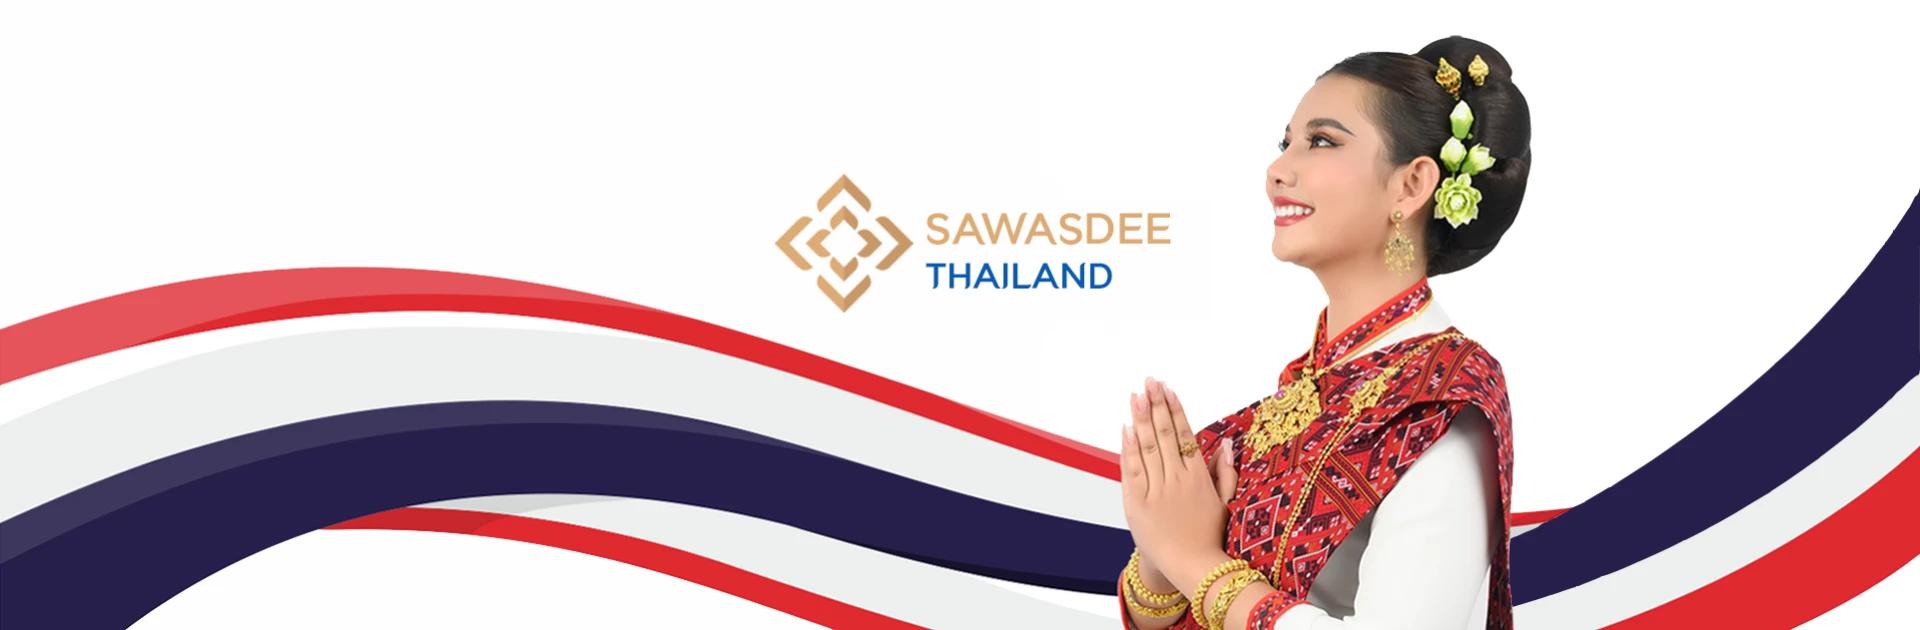 Sawasdee thailand